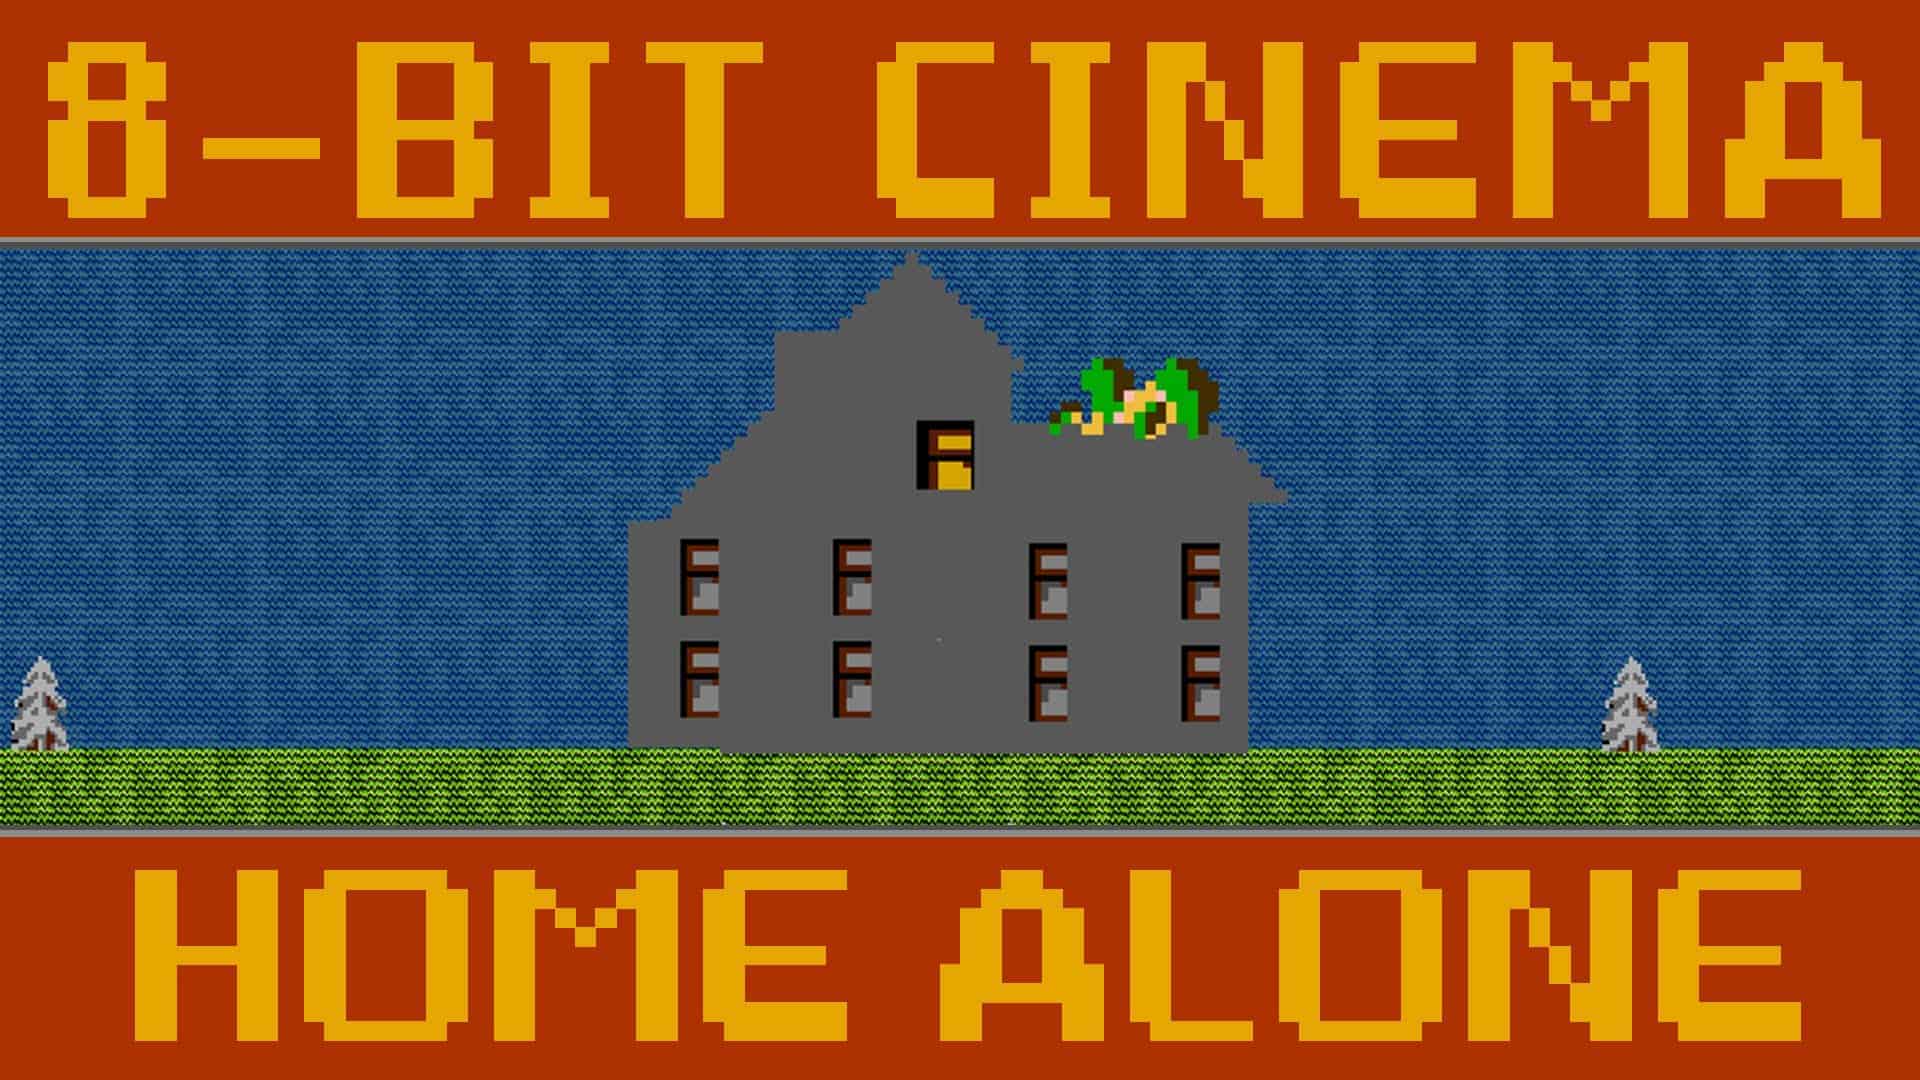 Home Alone als 8-Bit Game